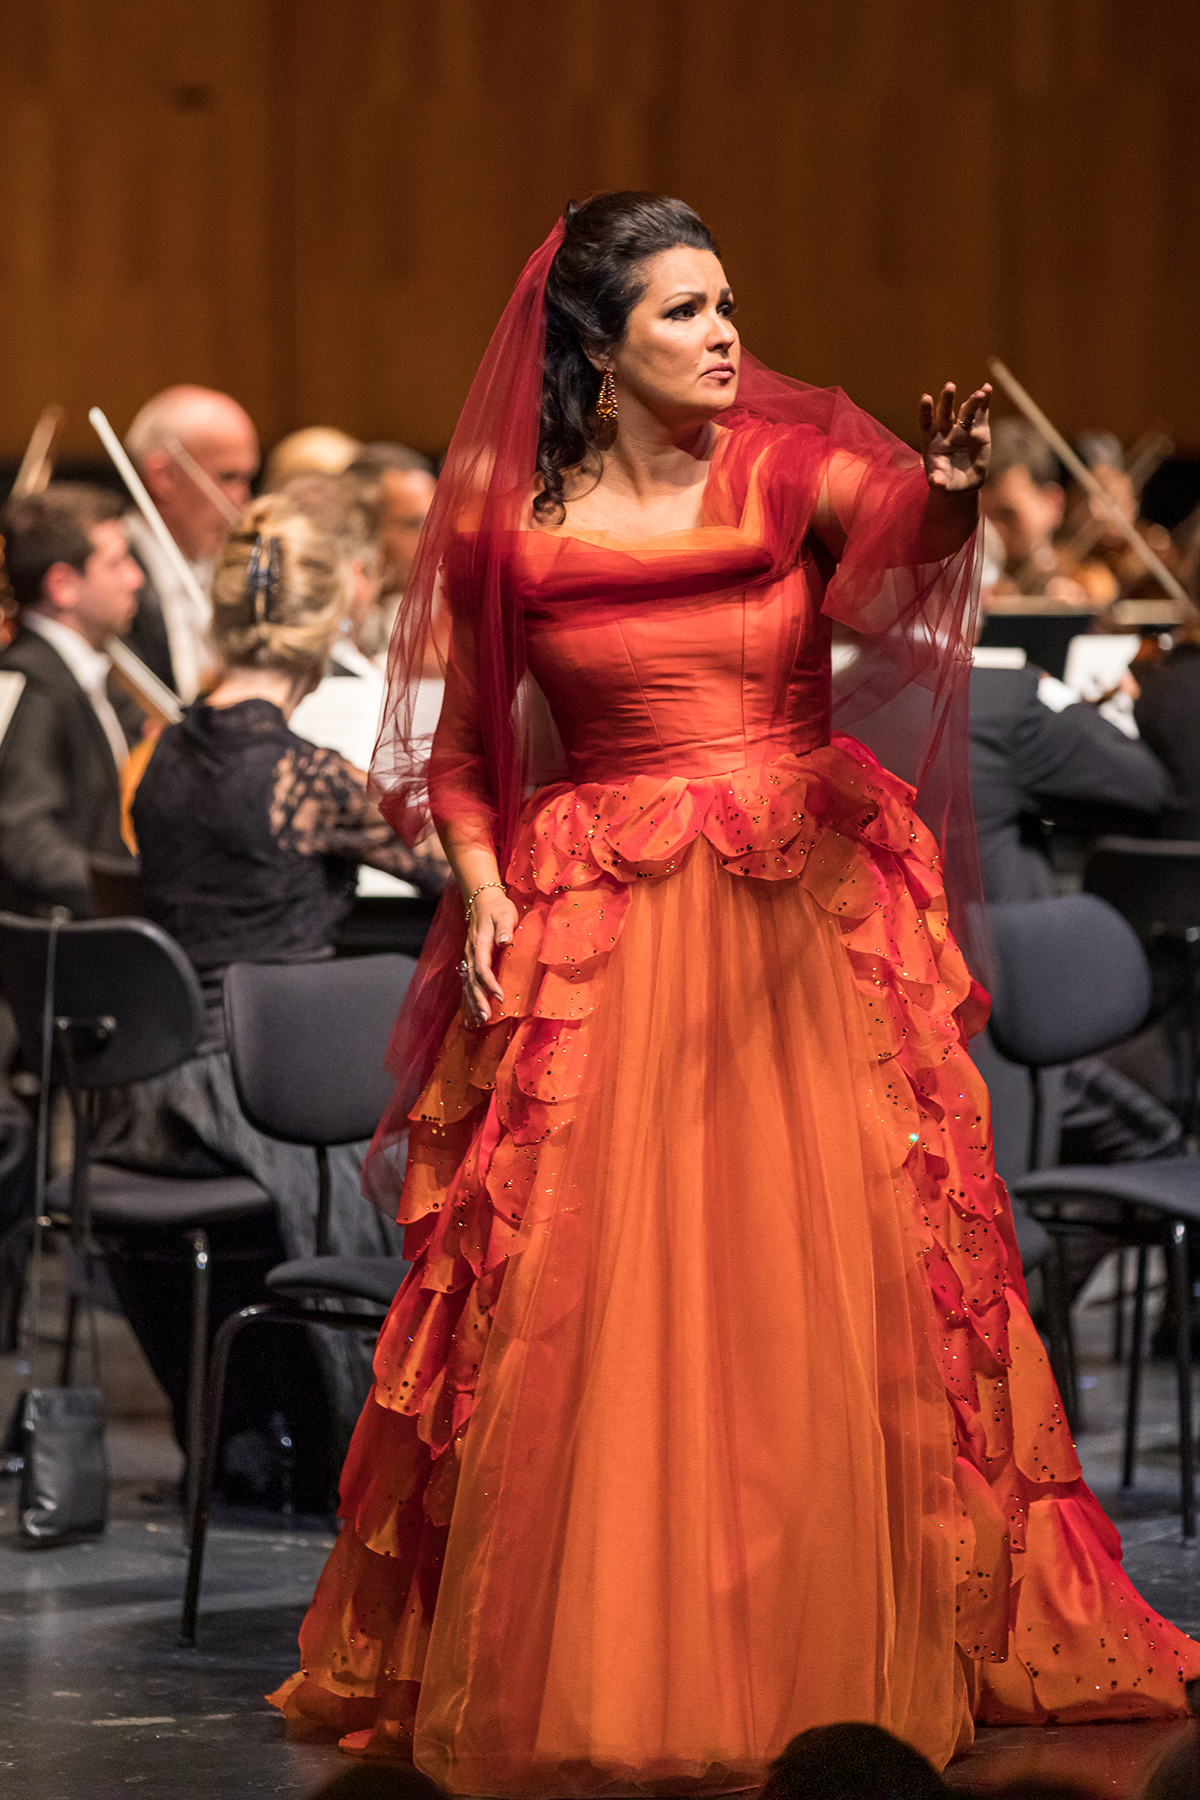 Opera singer in an orange dress in performance